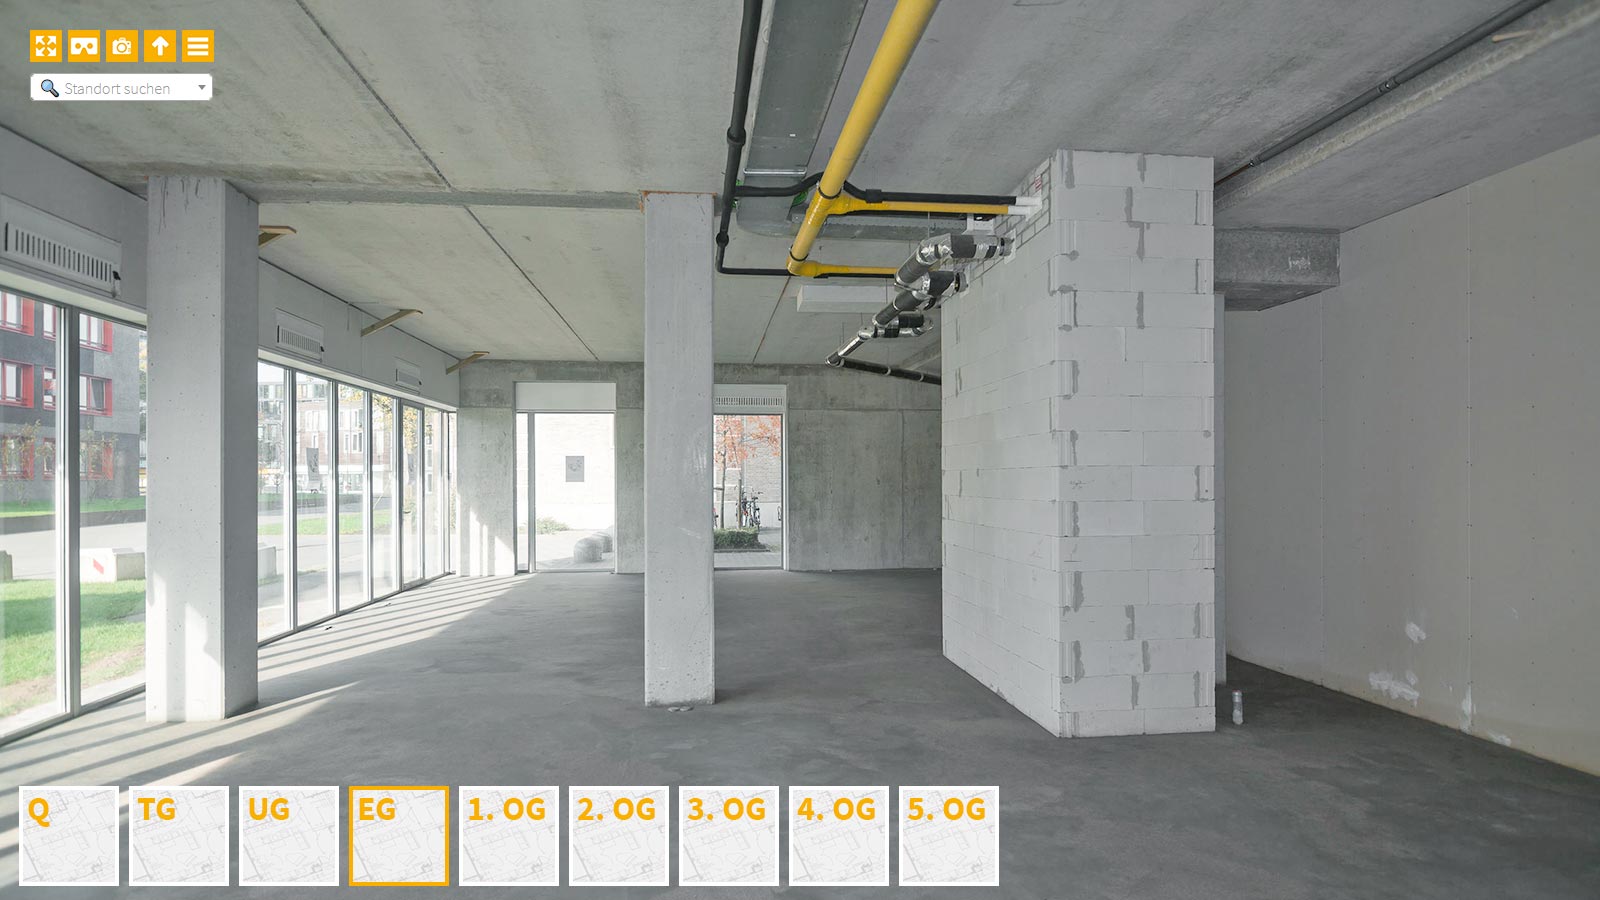 Baudokumentation 360 Grad bei gestörten Projekten in 


	


	


	


	


	


	


	


	


	


	Mülheim an der Ruhr









, Bilddokumentation als virtueller Rundgang